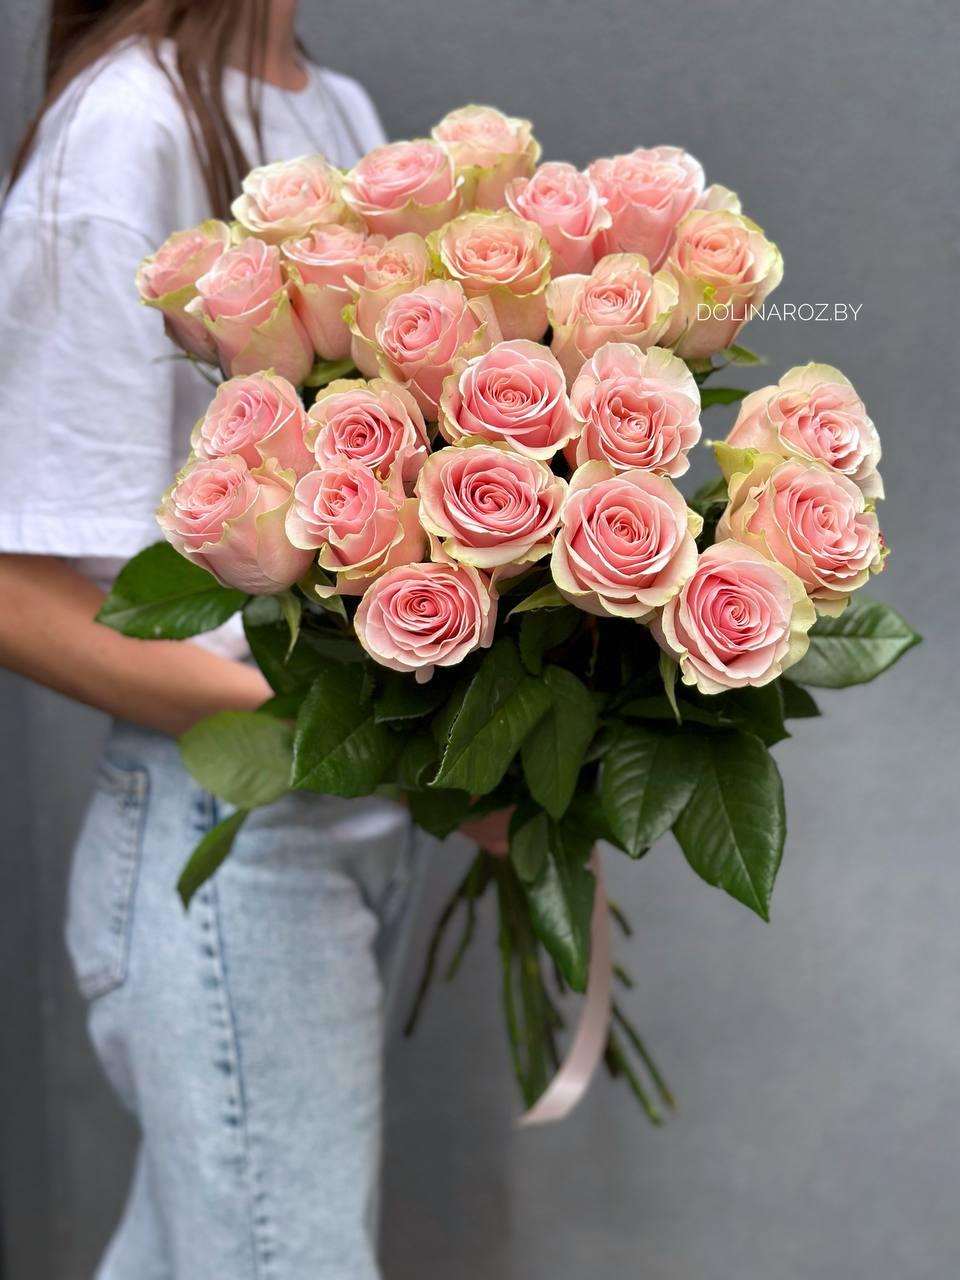 Bouquet of roses "Surprise"